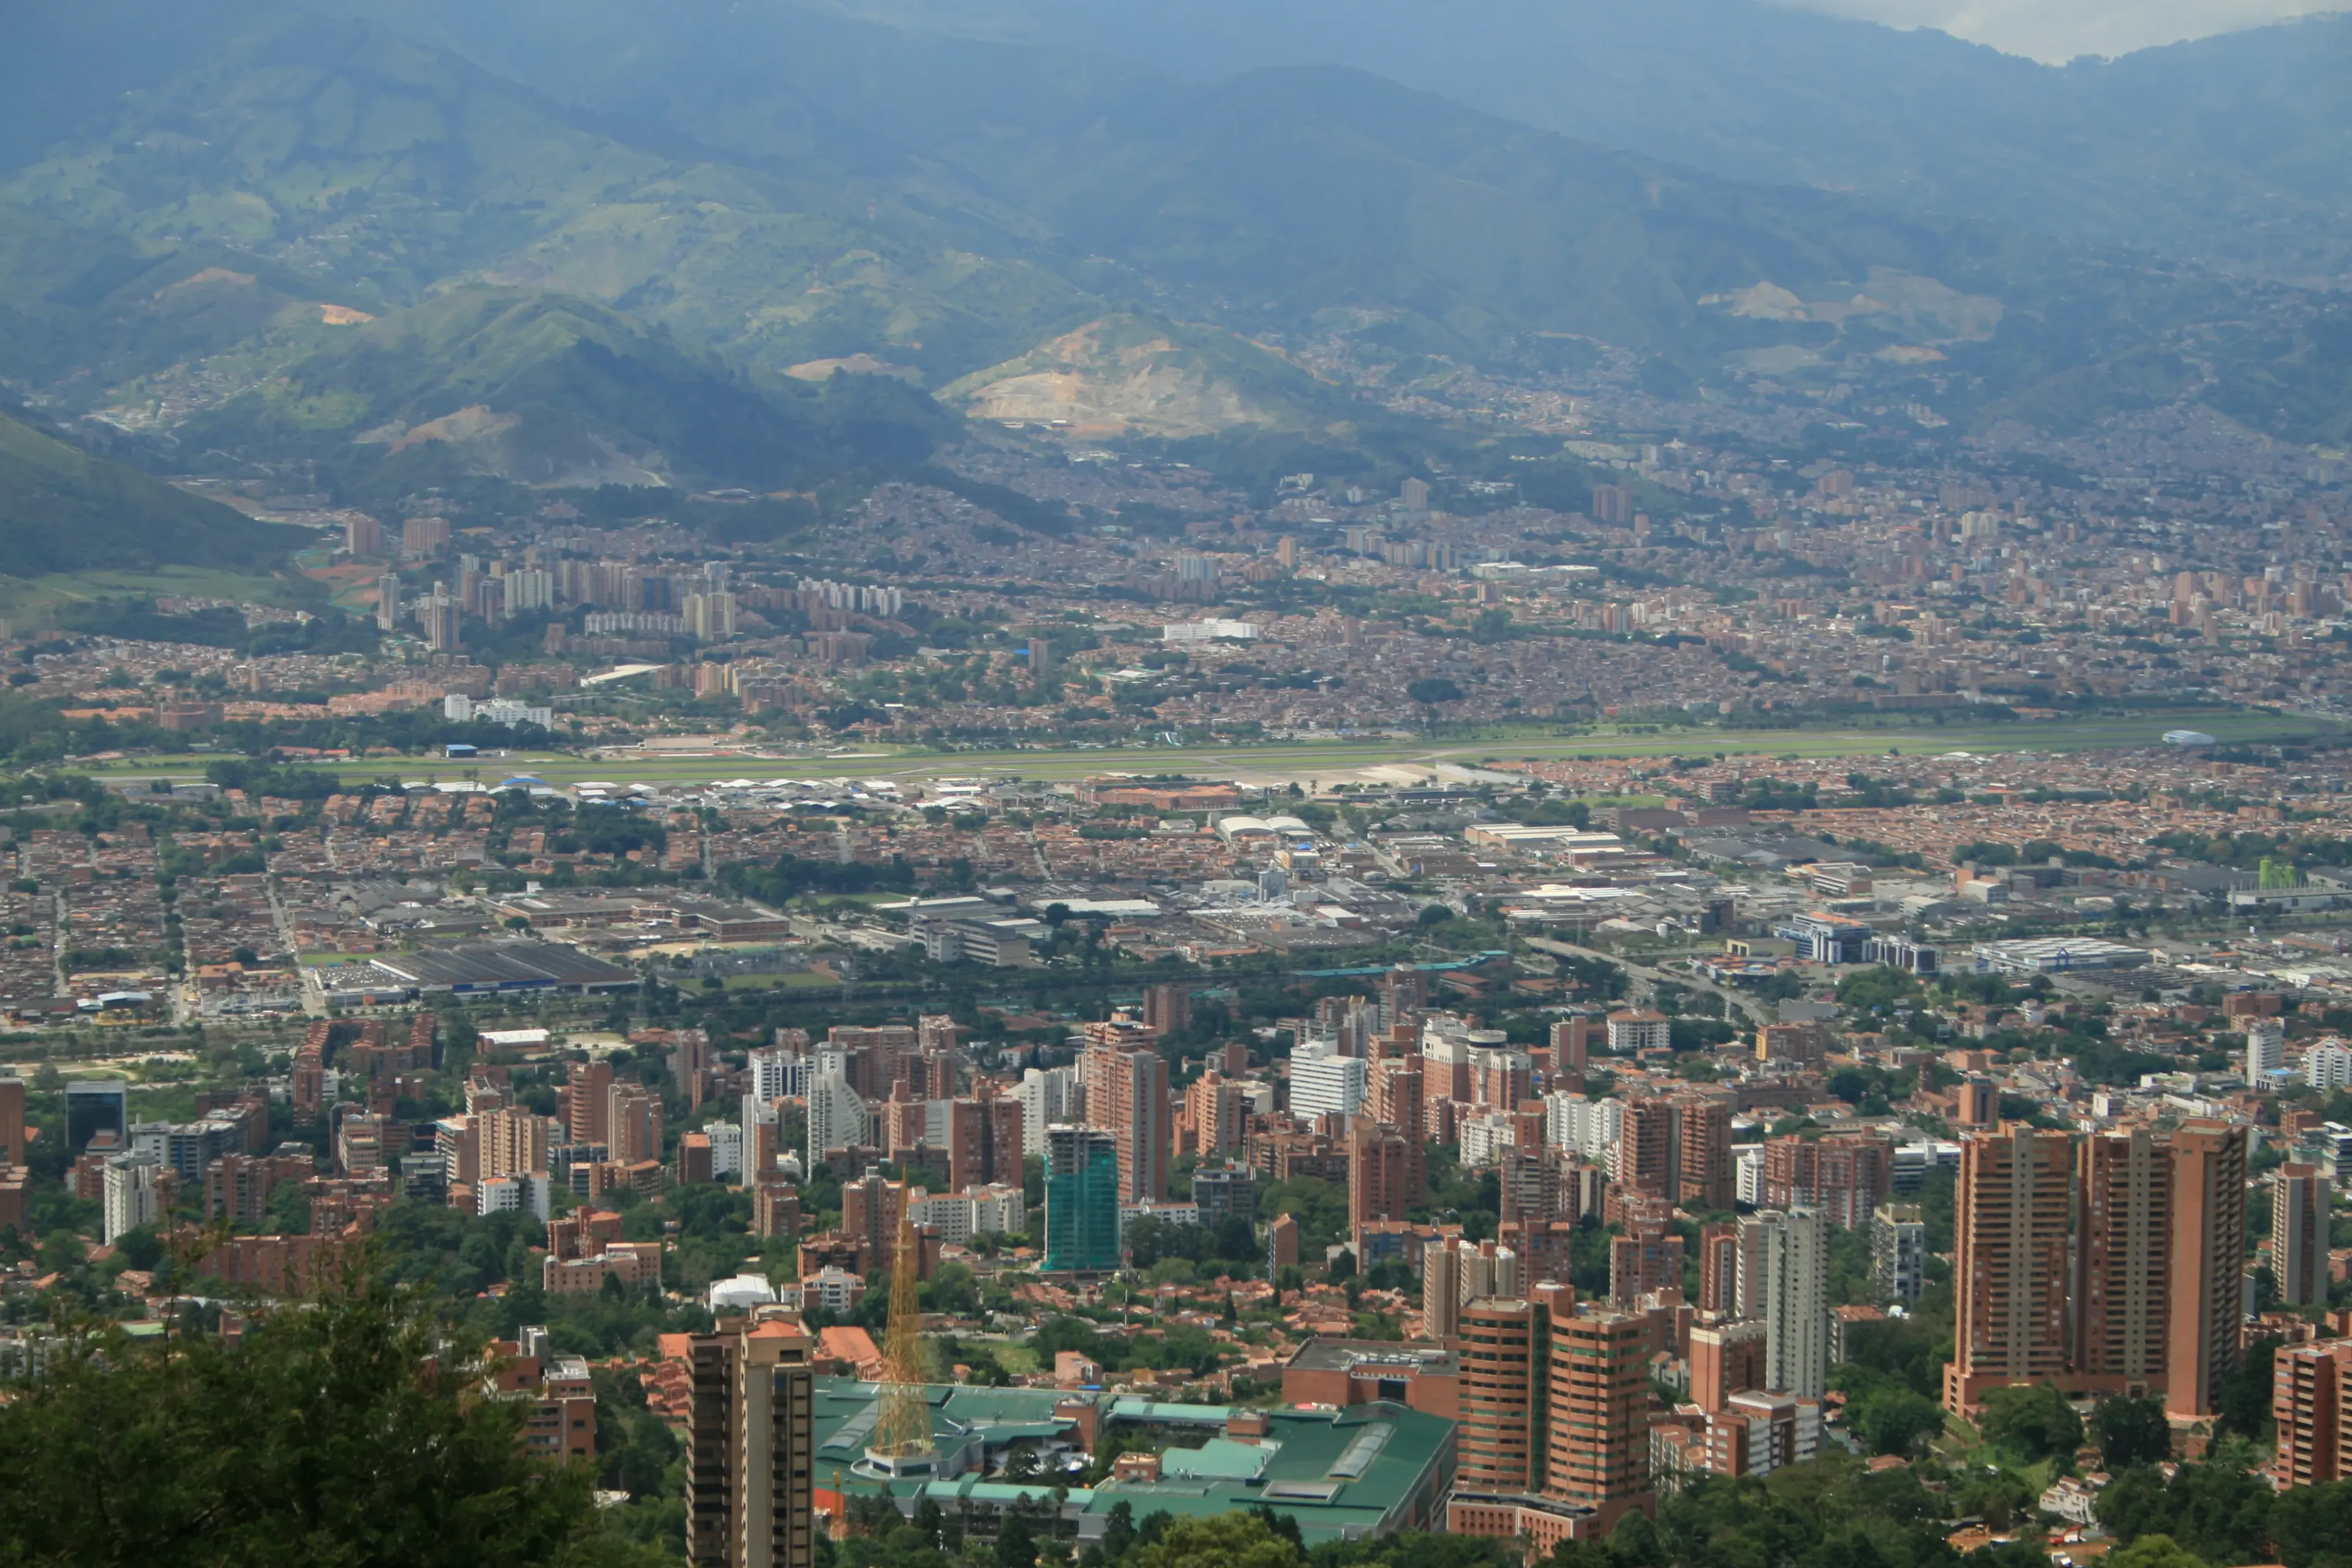 Medellin from Mirador #3, 2008